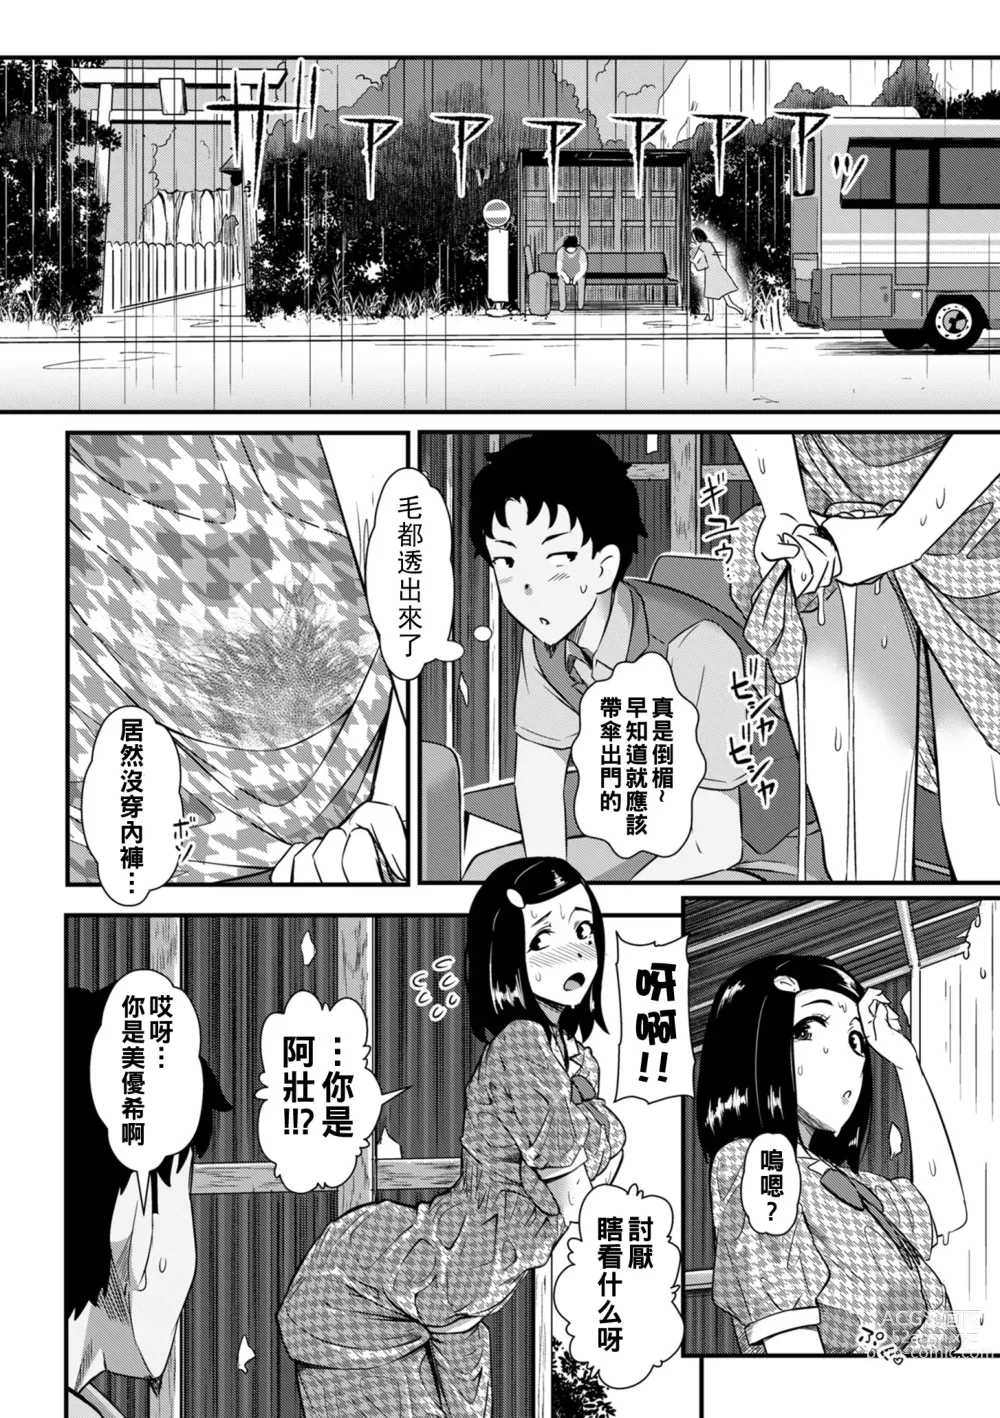 Page 6 of manga Sunao ni Narenakatta Futari wa